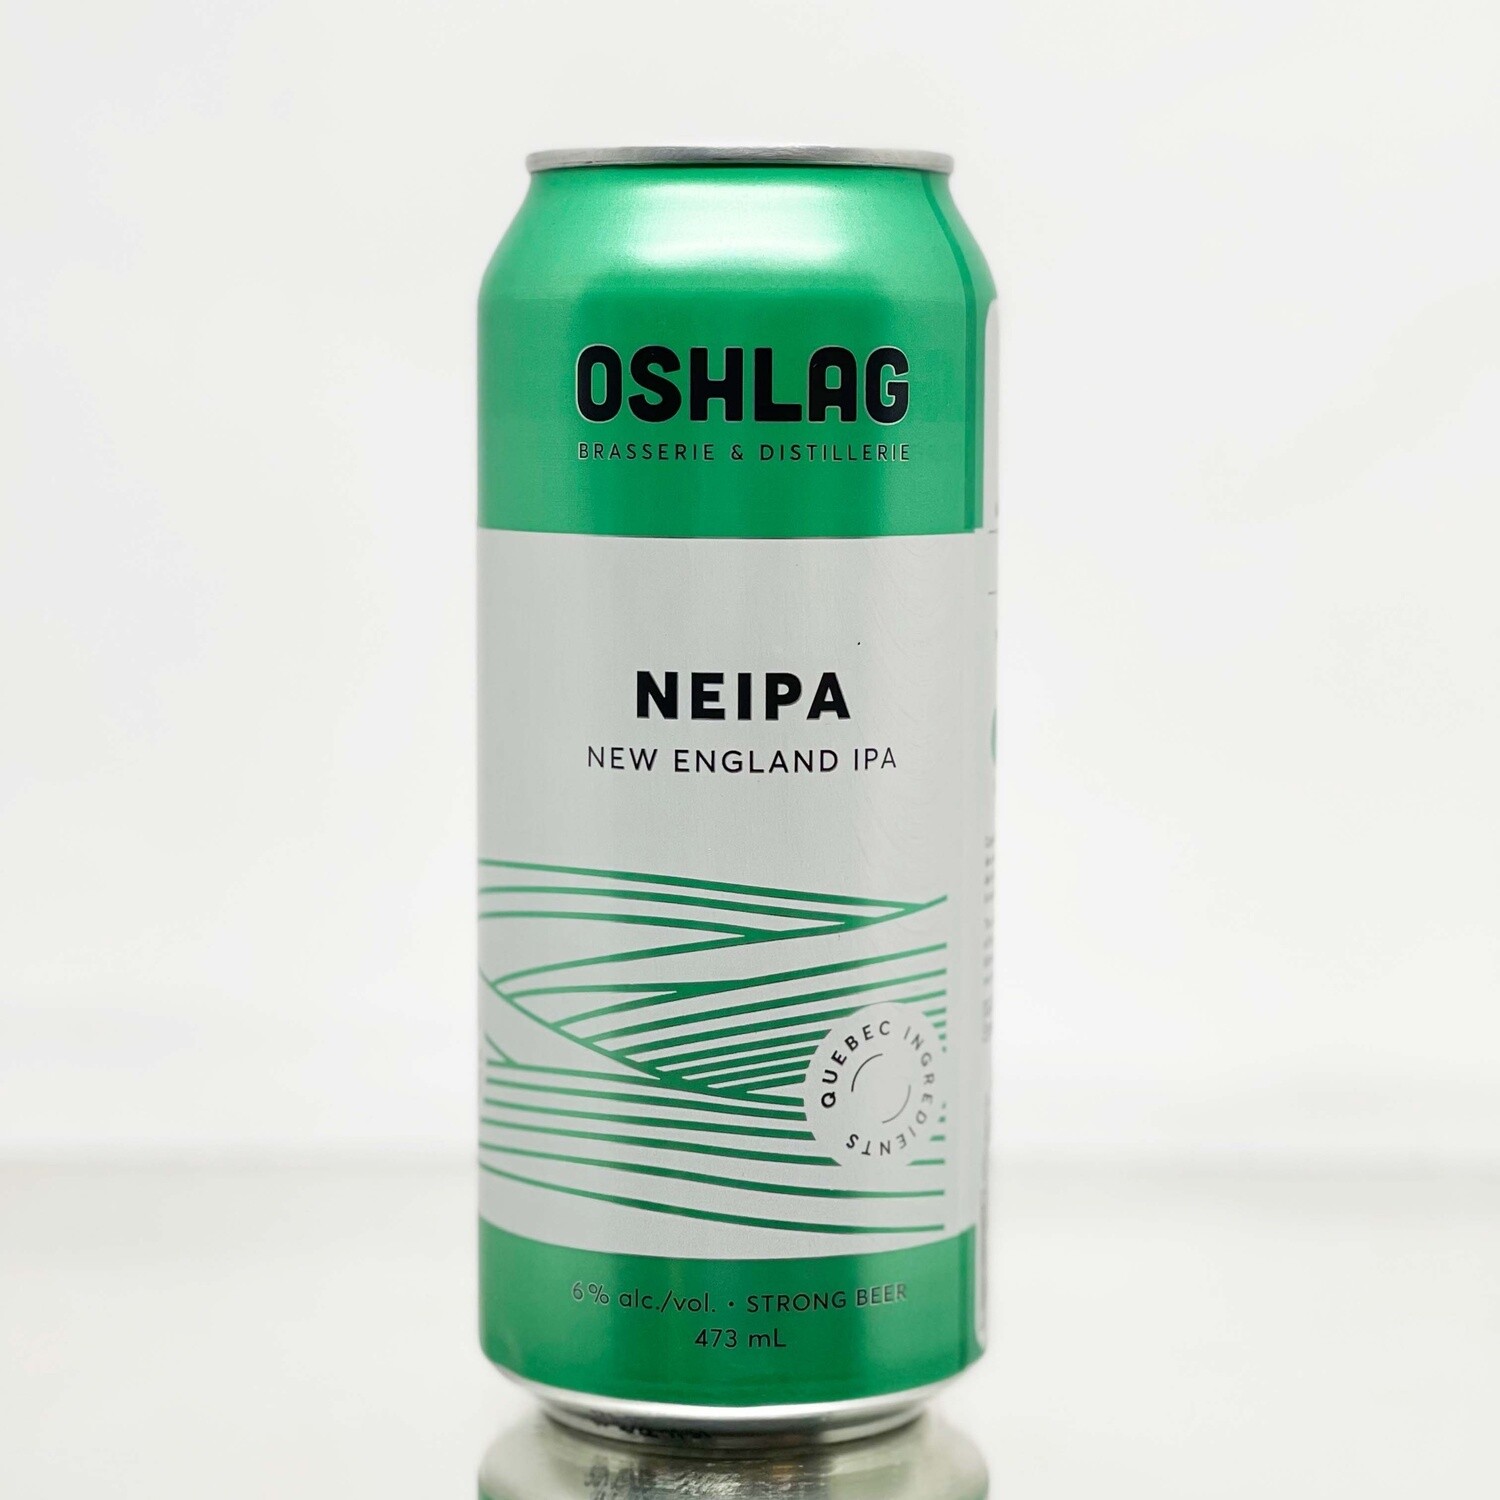 Oshlag - New England IPA